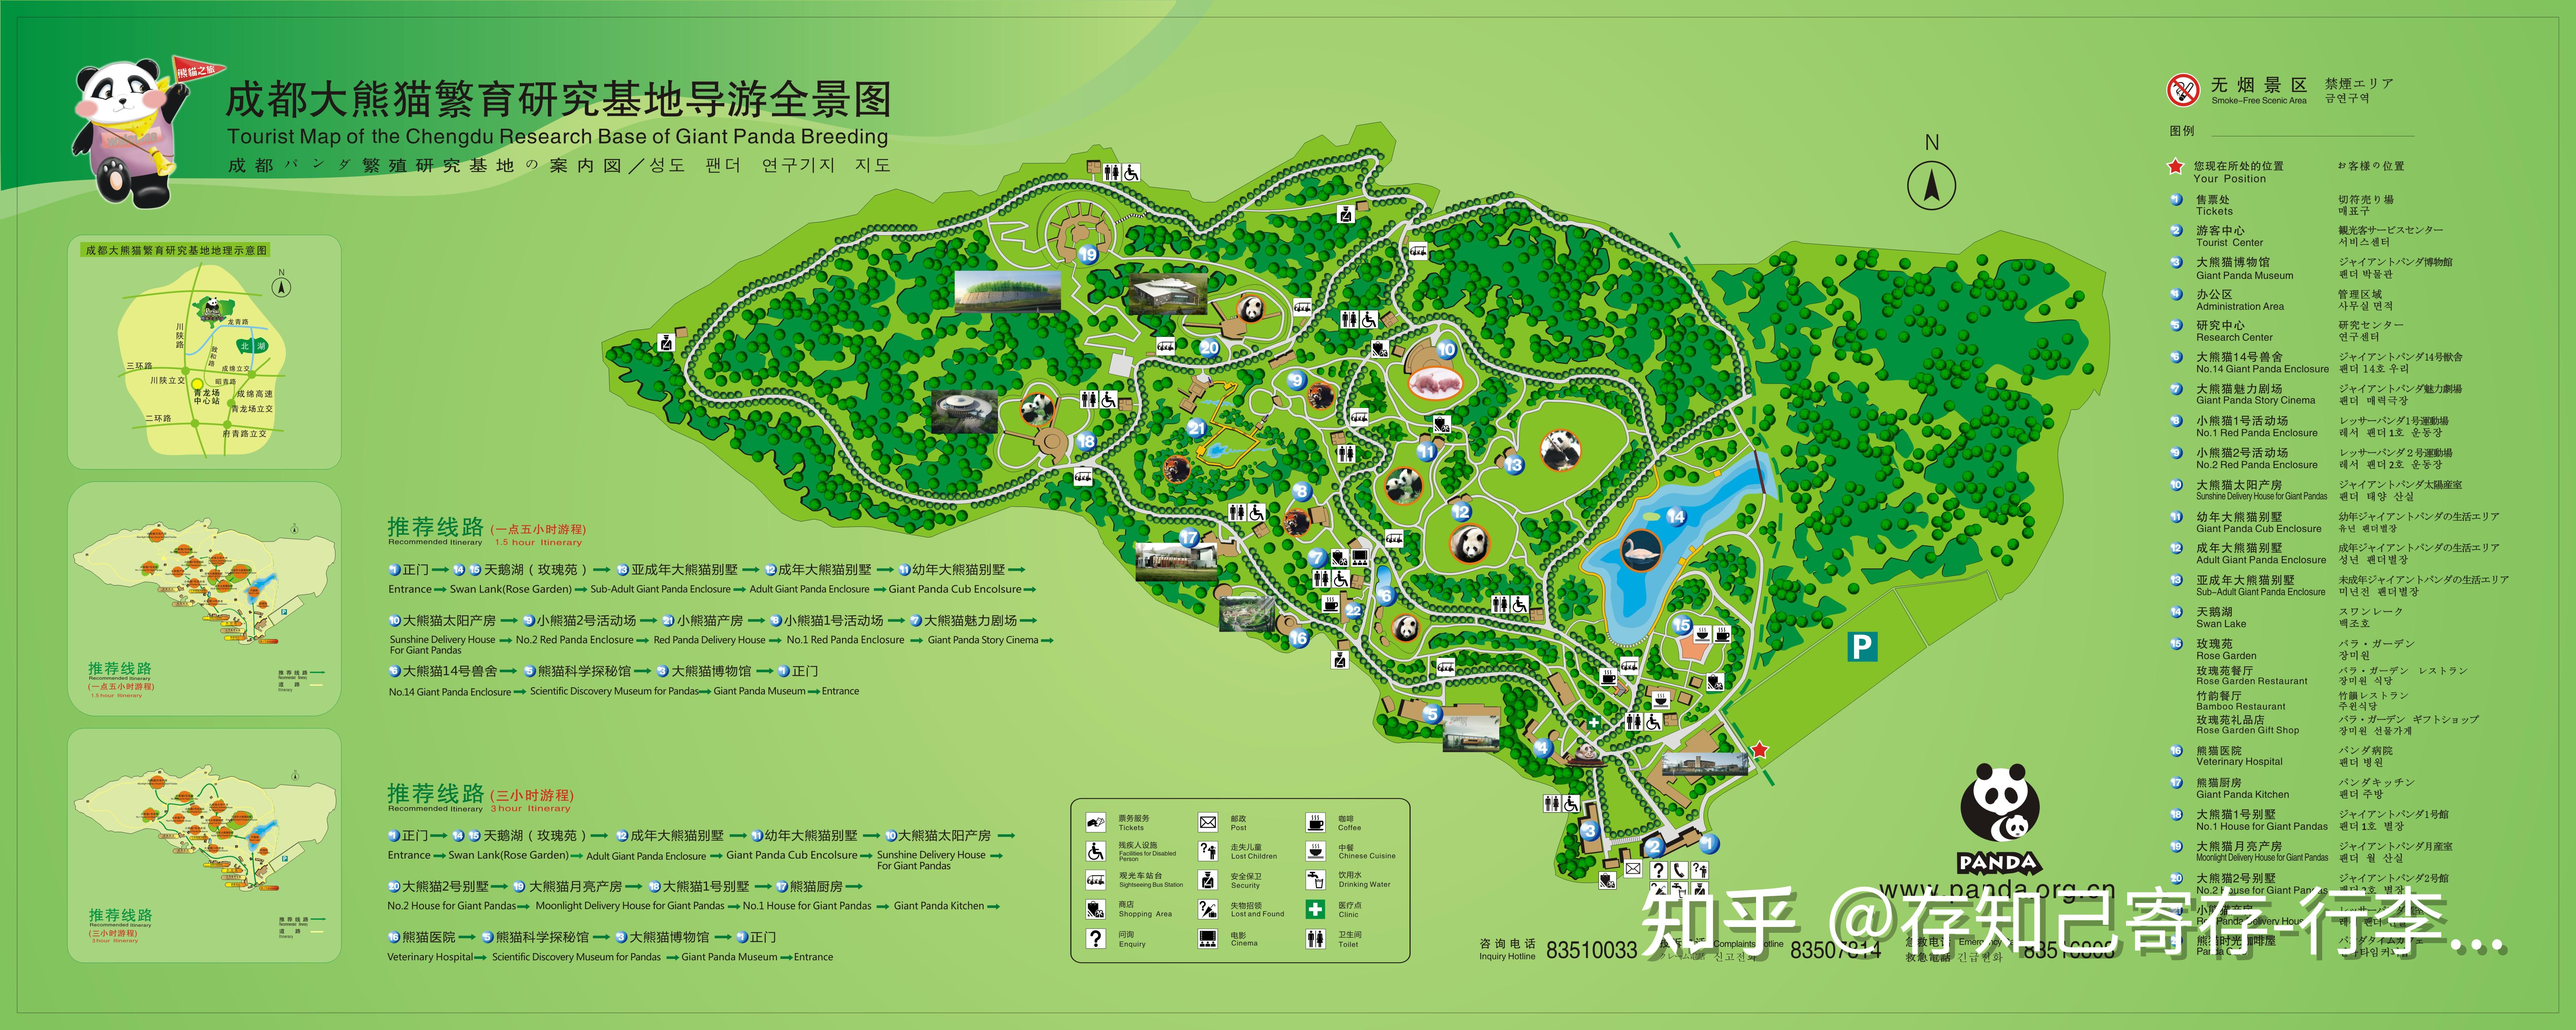 熊猫基地地图全景图图片